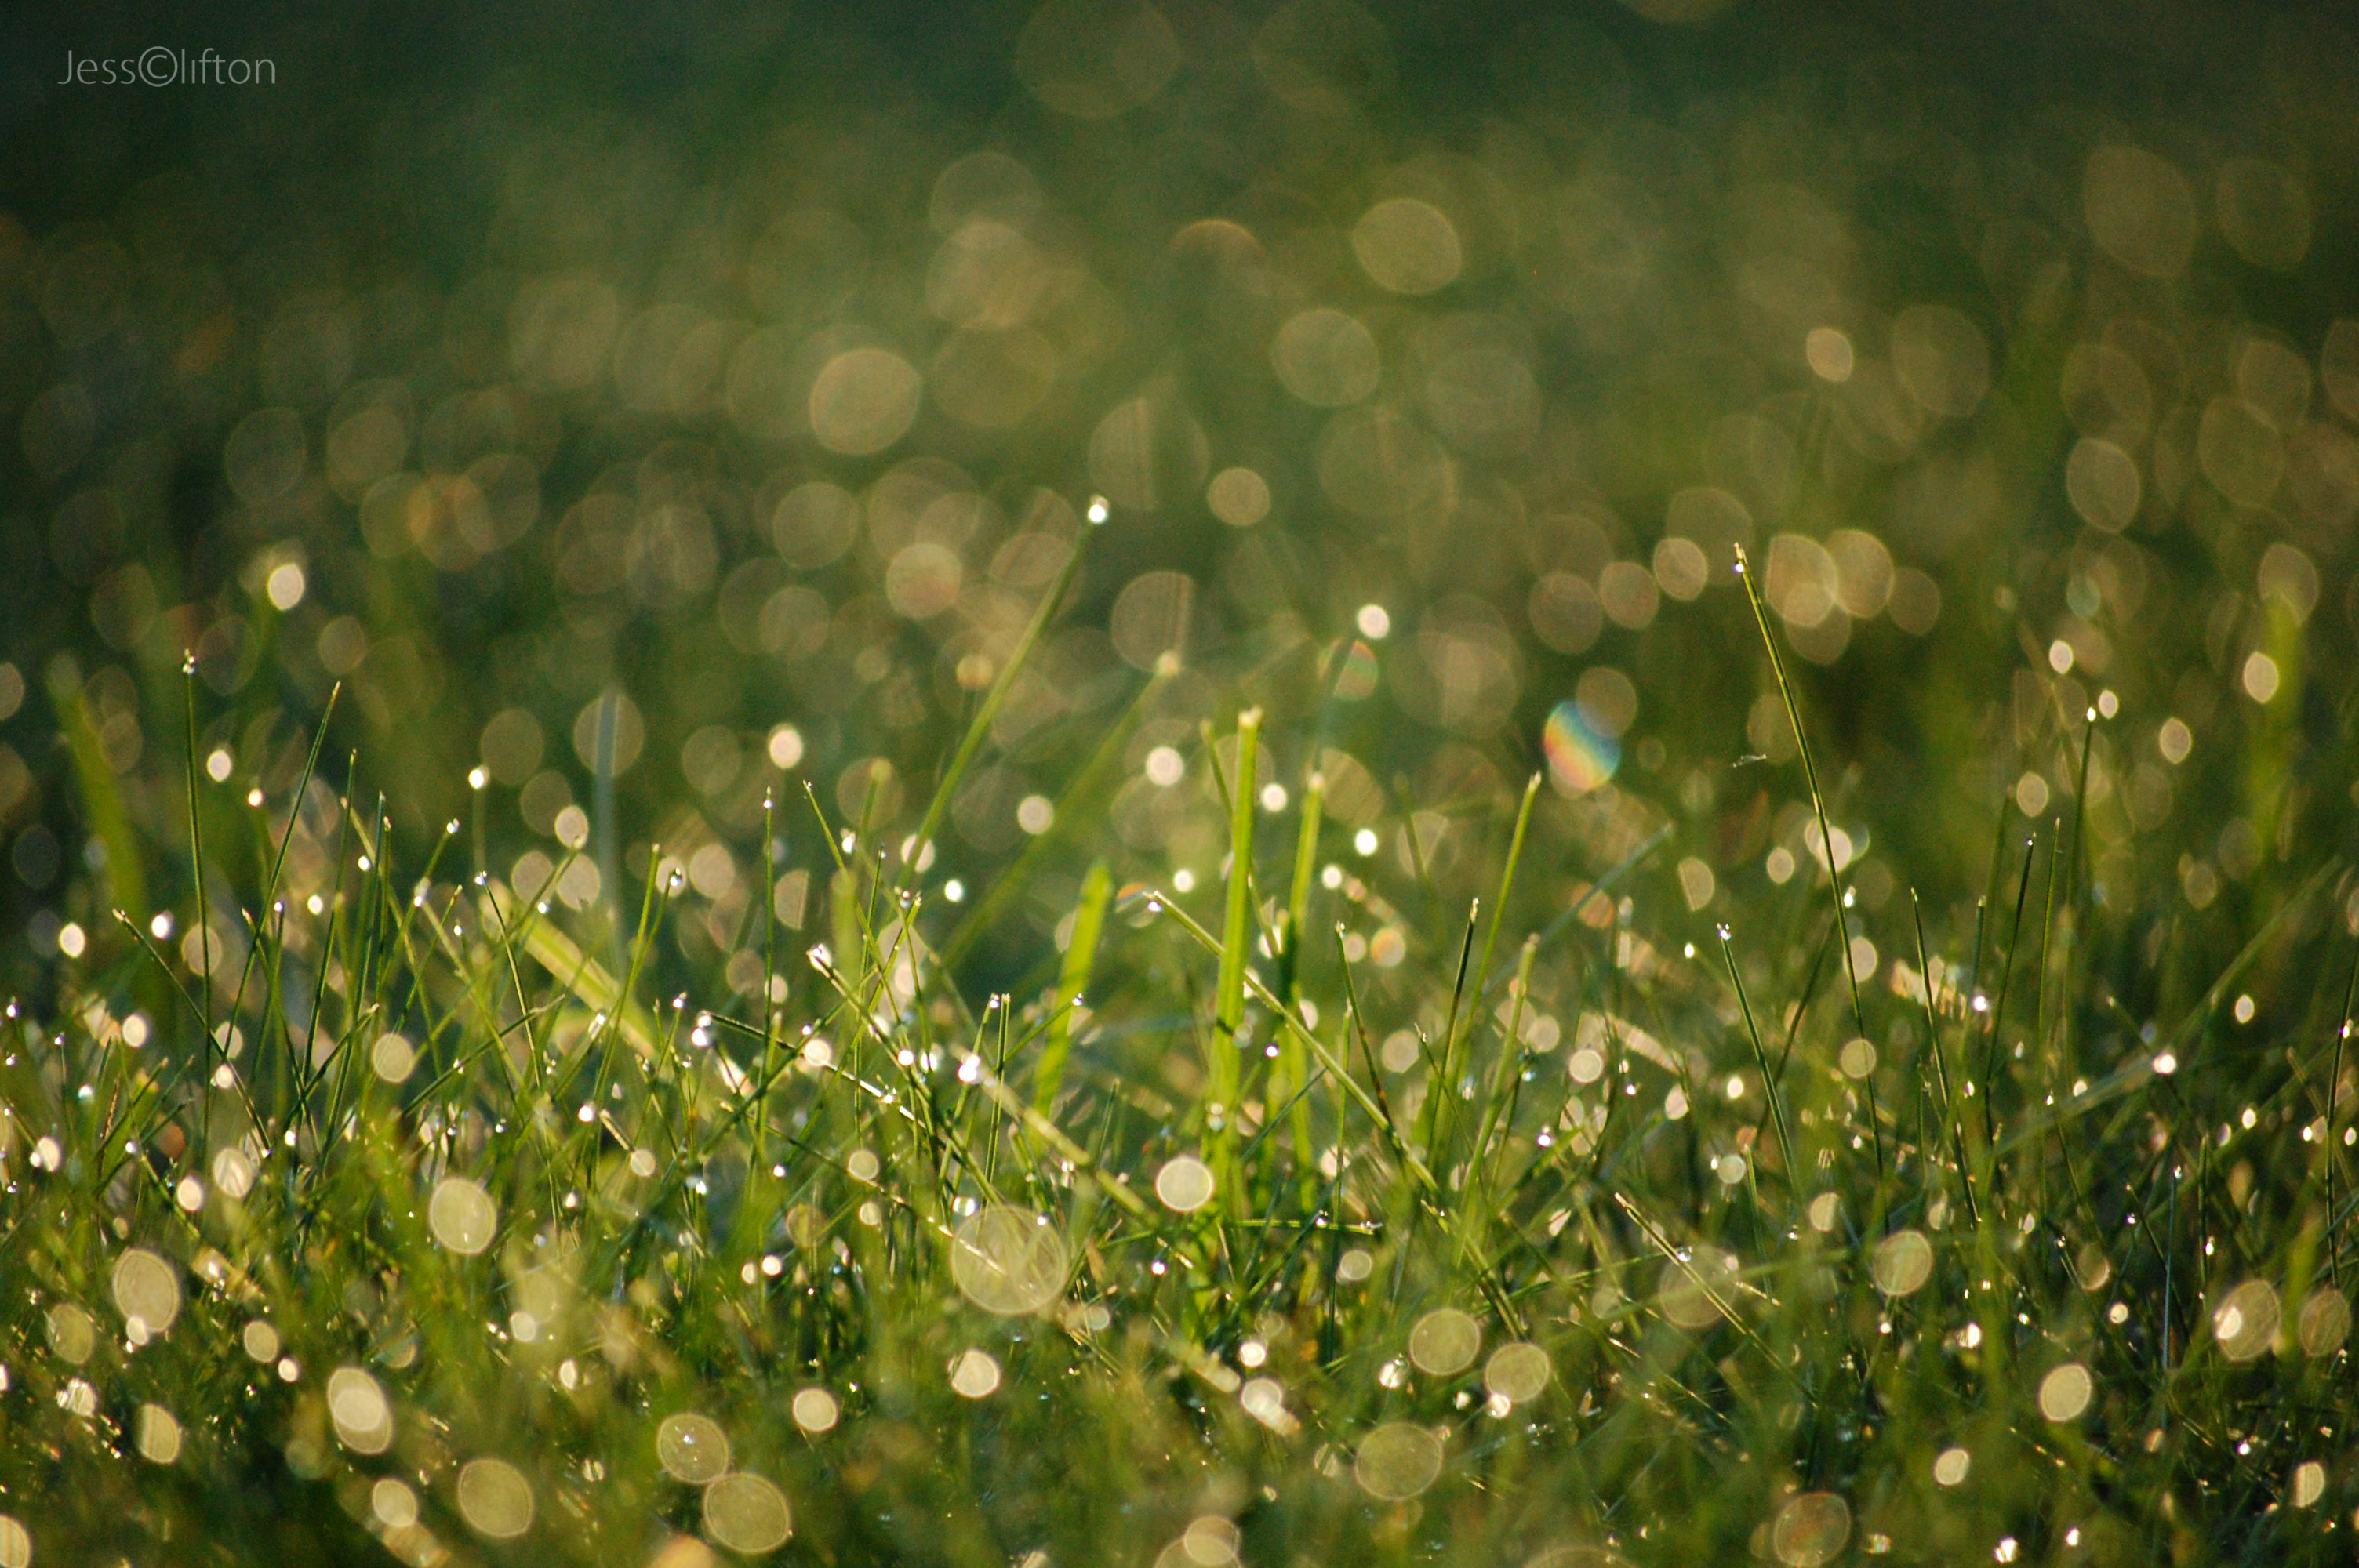 Wet Grass Bokeh | Jess Clifton Photography